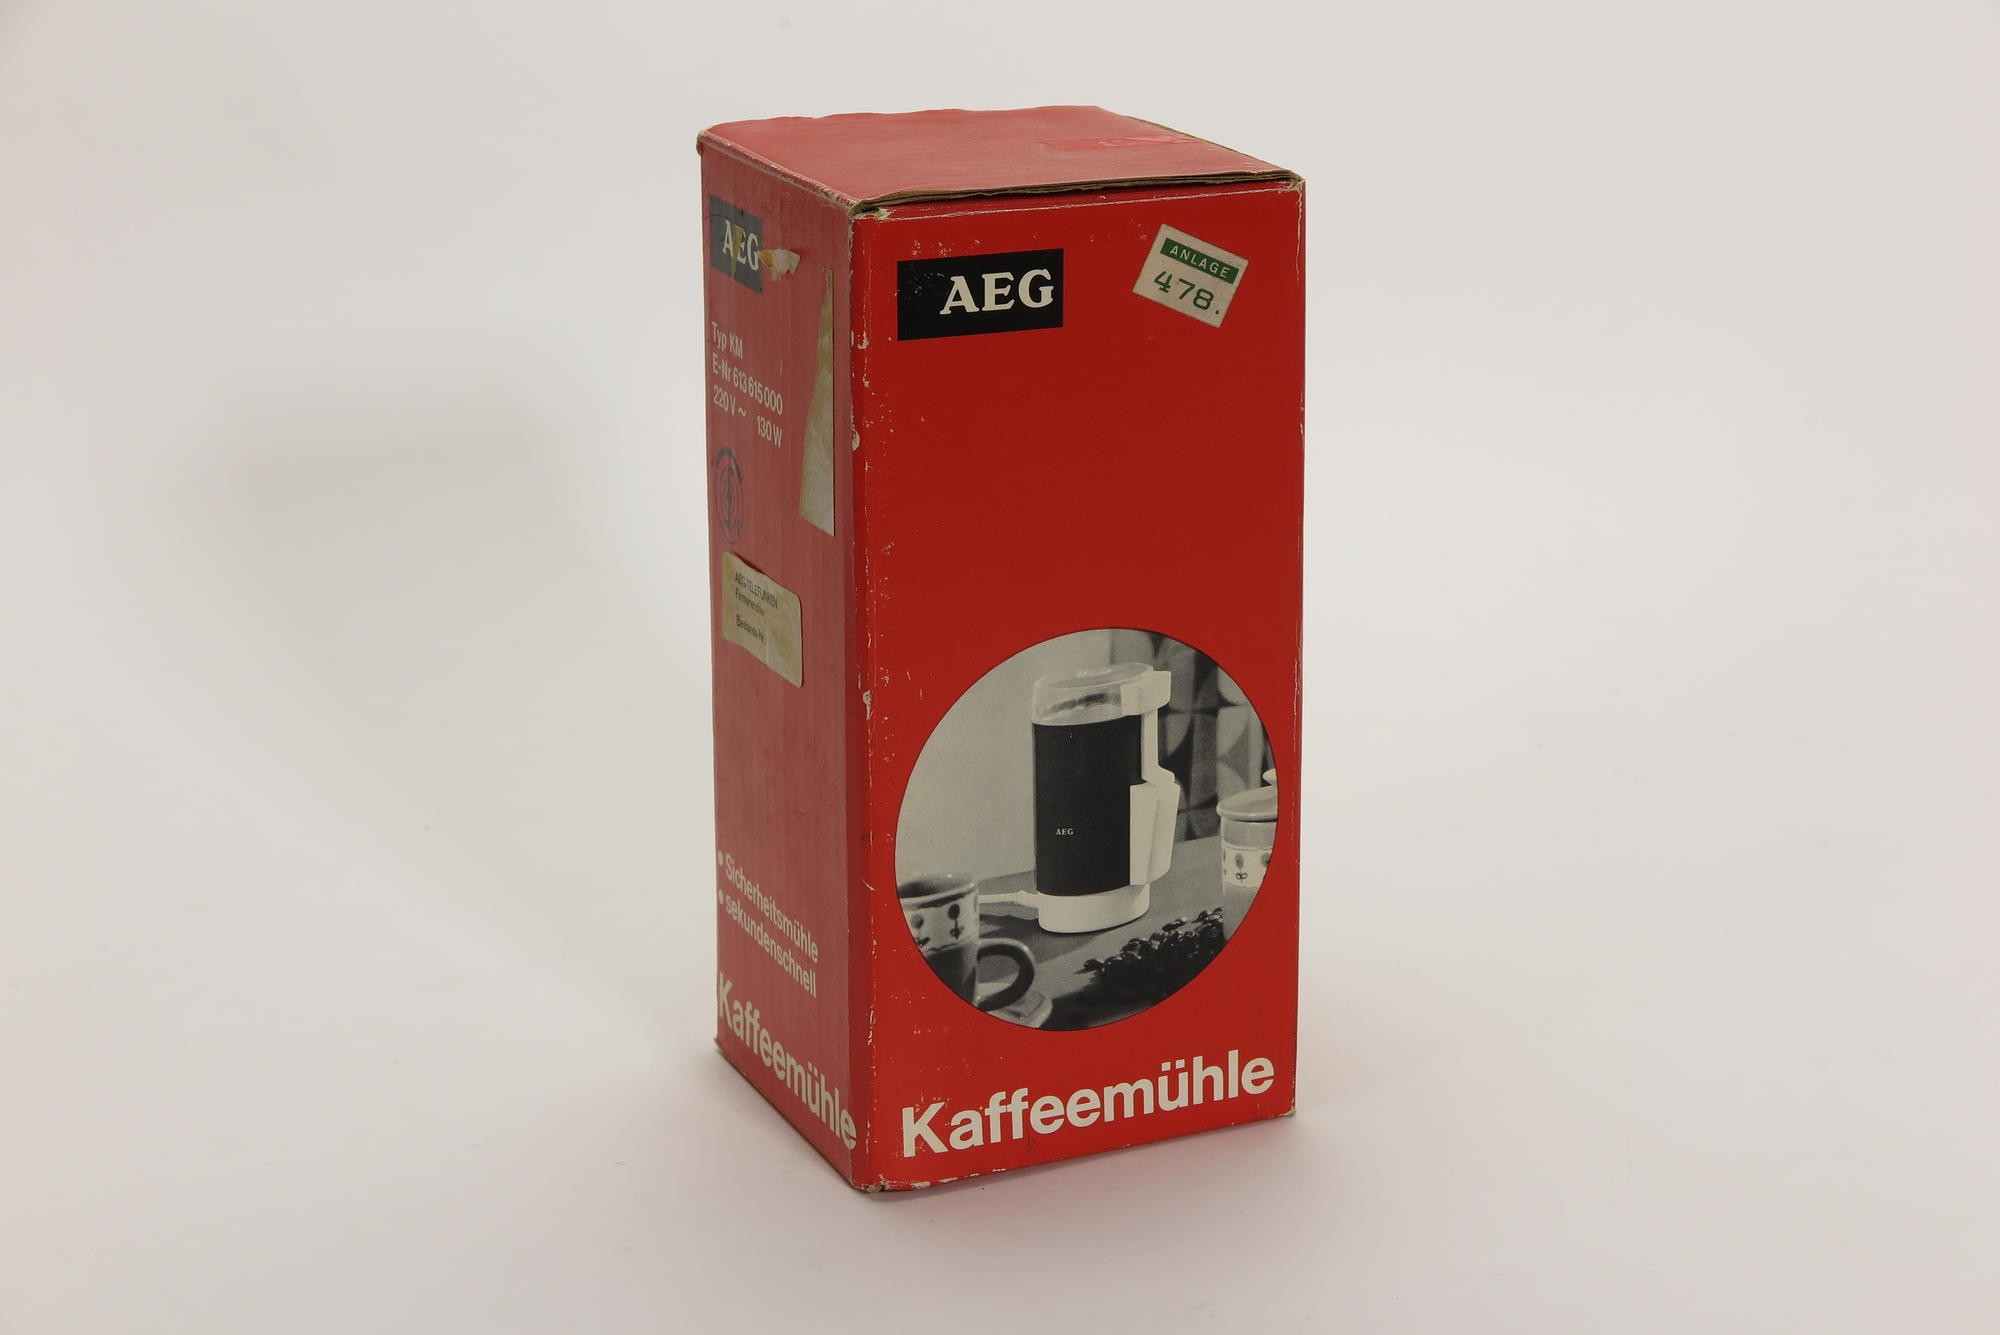 Verpackungskarton, Zubehör zu Elektrische Kaffeemühle AEG Typ KM (Stiftung Deutsches Technikmuseum Berlin CC0)